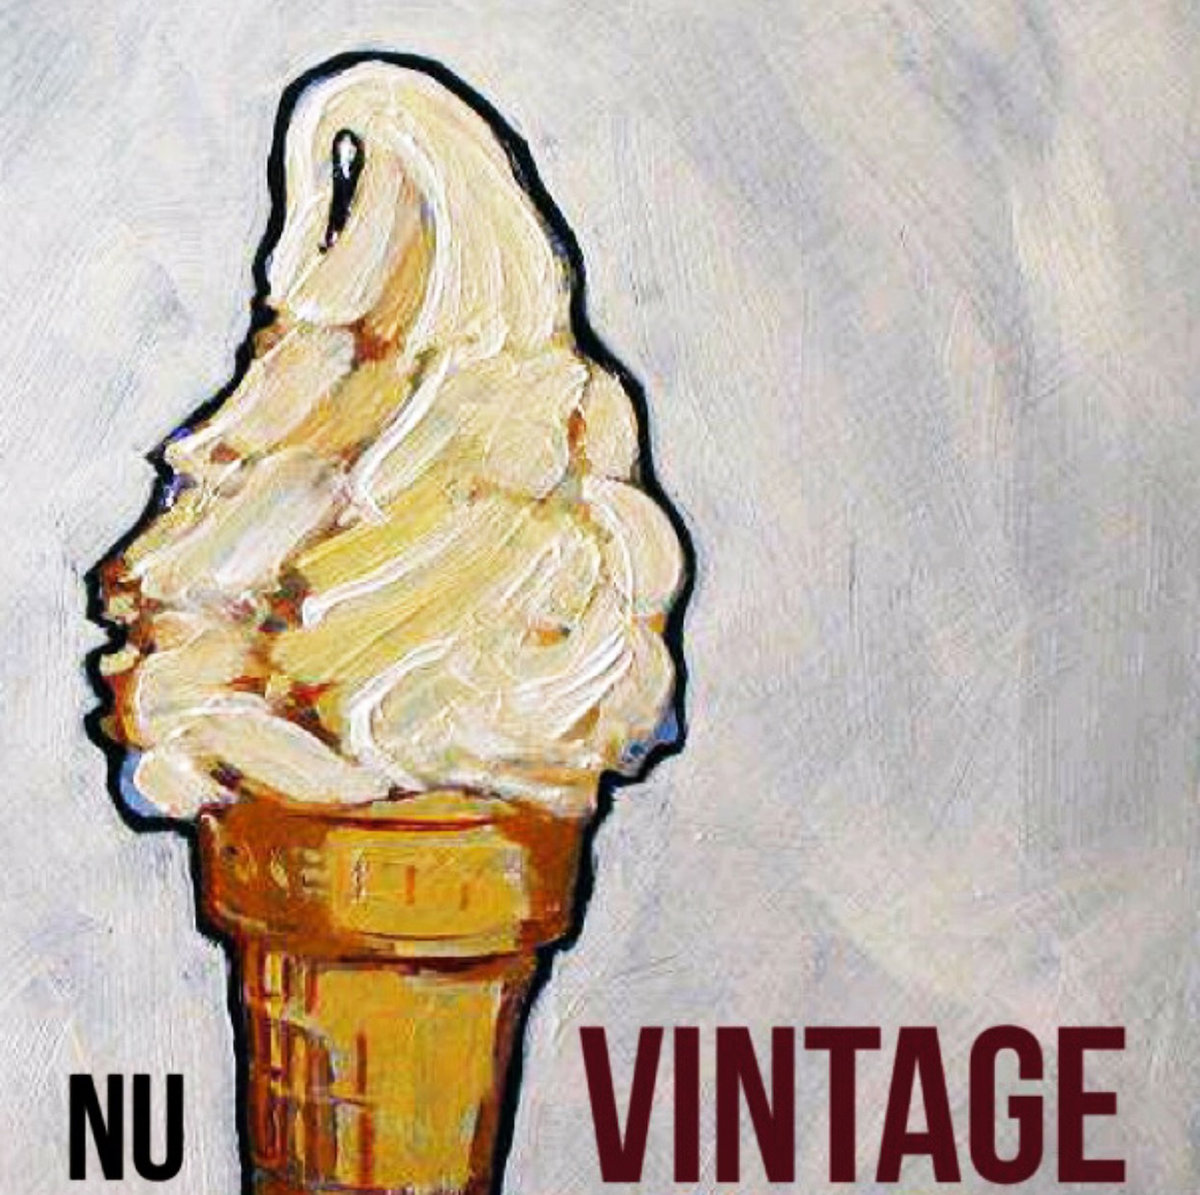 Nu Vintage - "Spirit Food" (Release)